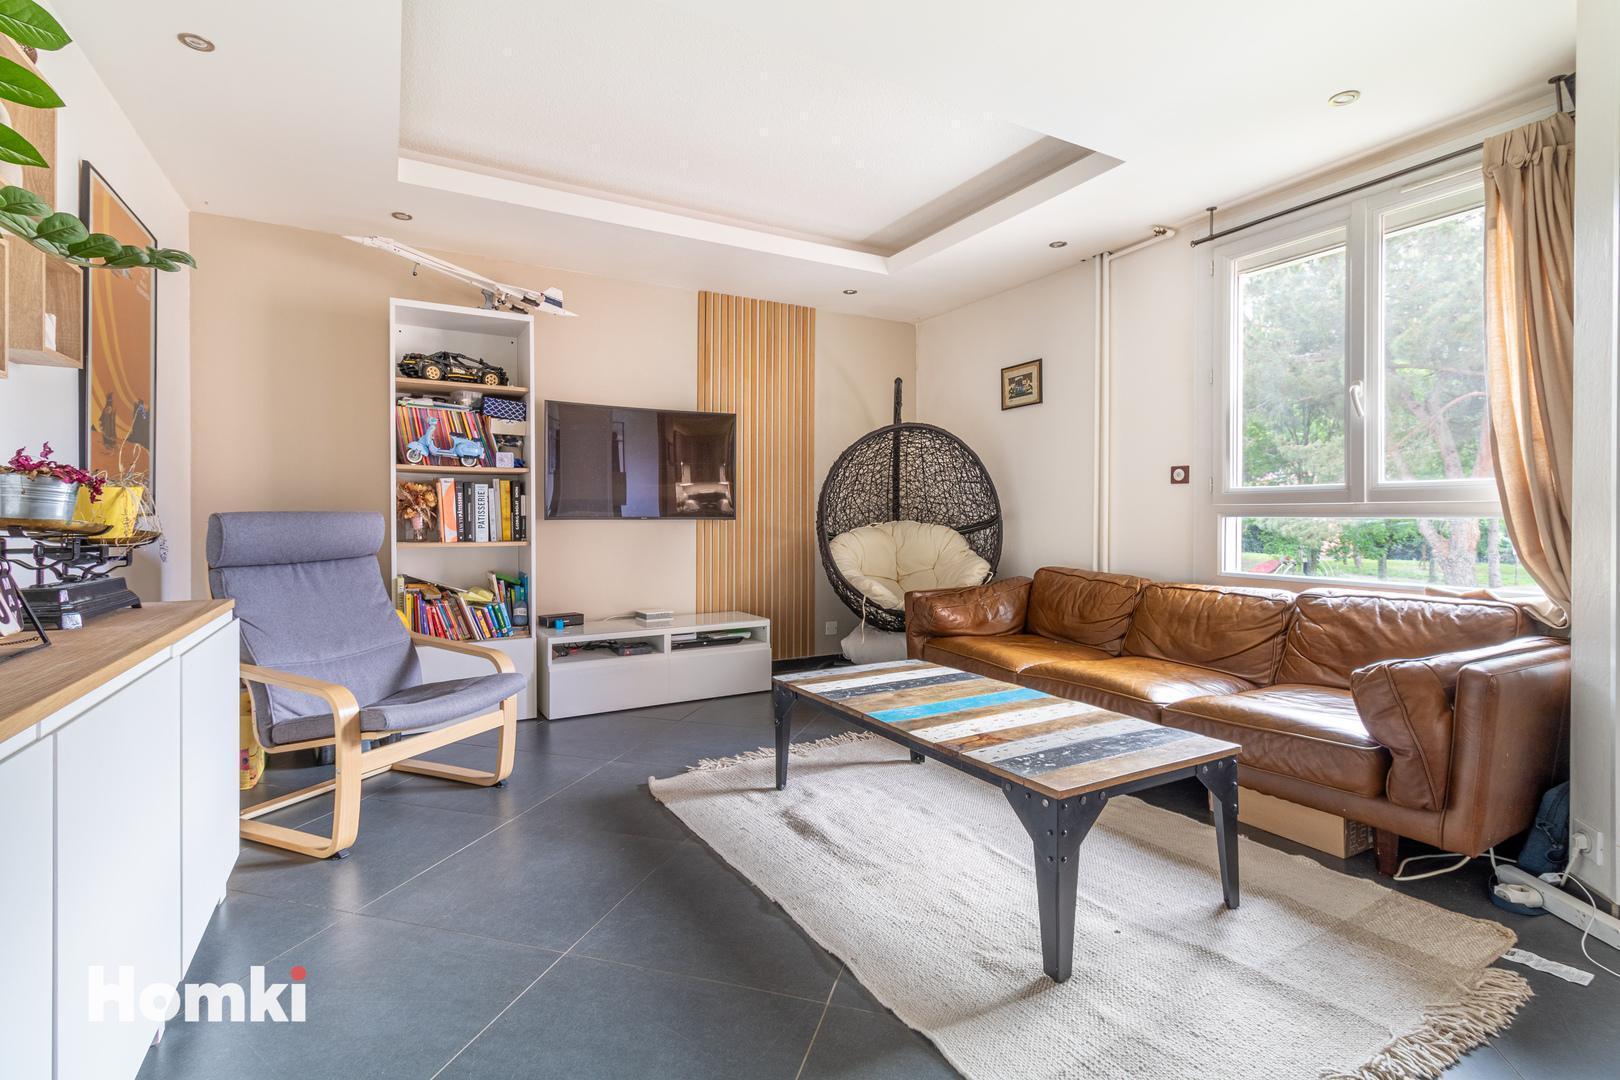 Homki - Vente Appartement  de 92.0 m² à Blagnac 31700